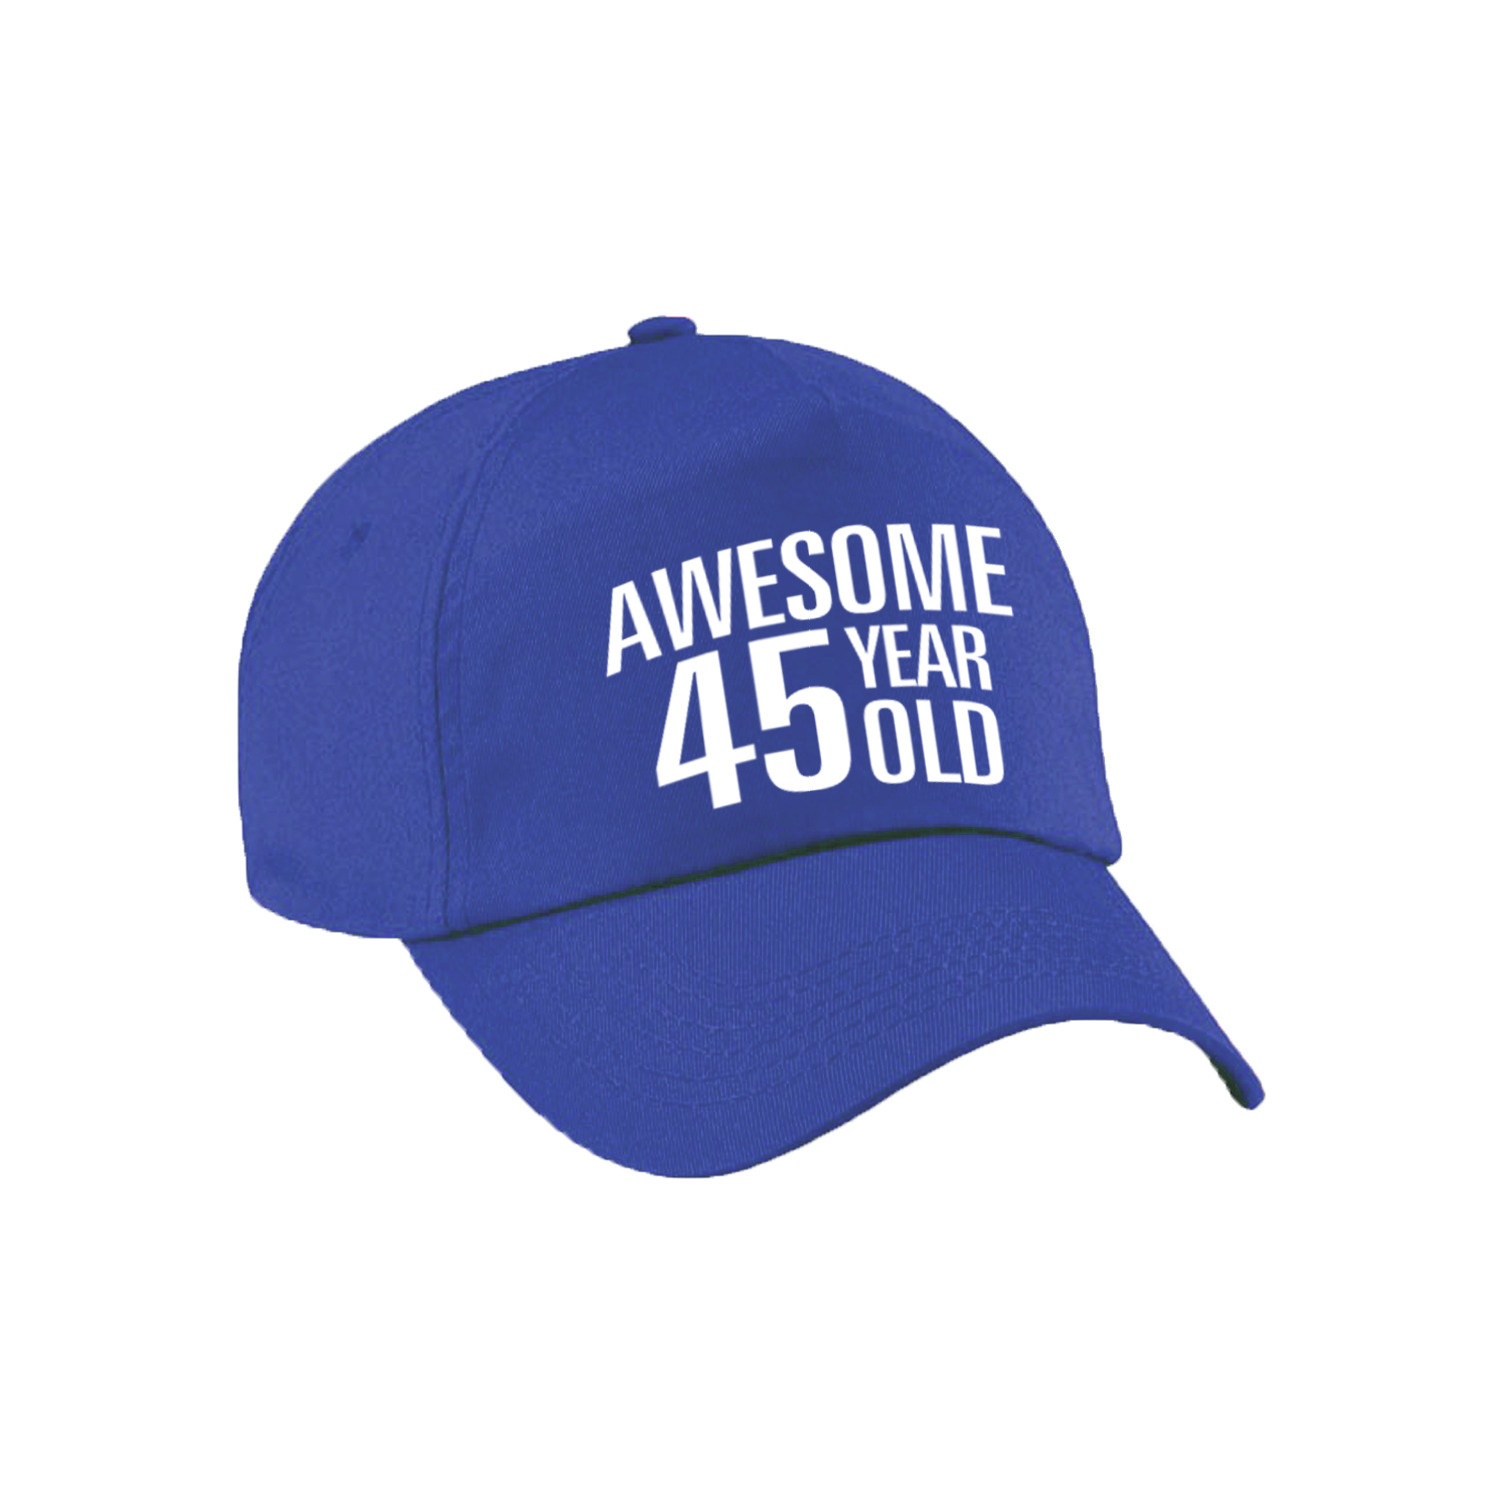 Awesome 45 year old verjaardag pet - cap blauw voor dames en heren